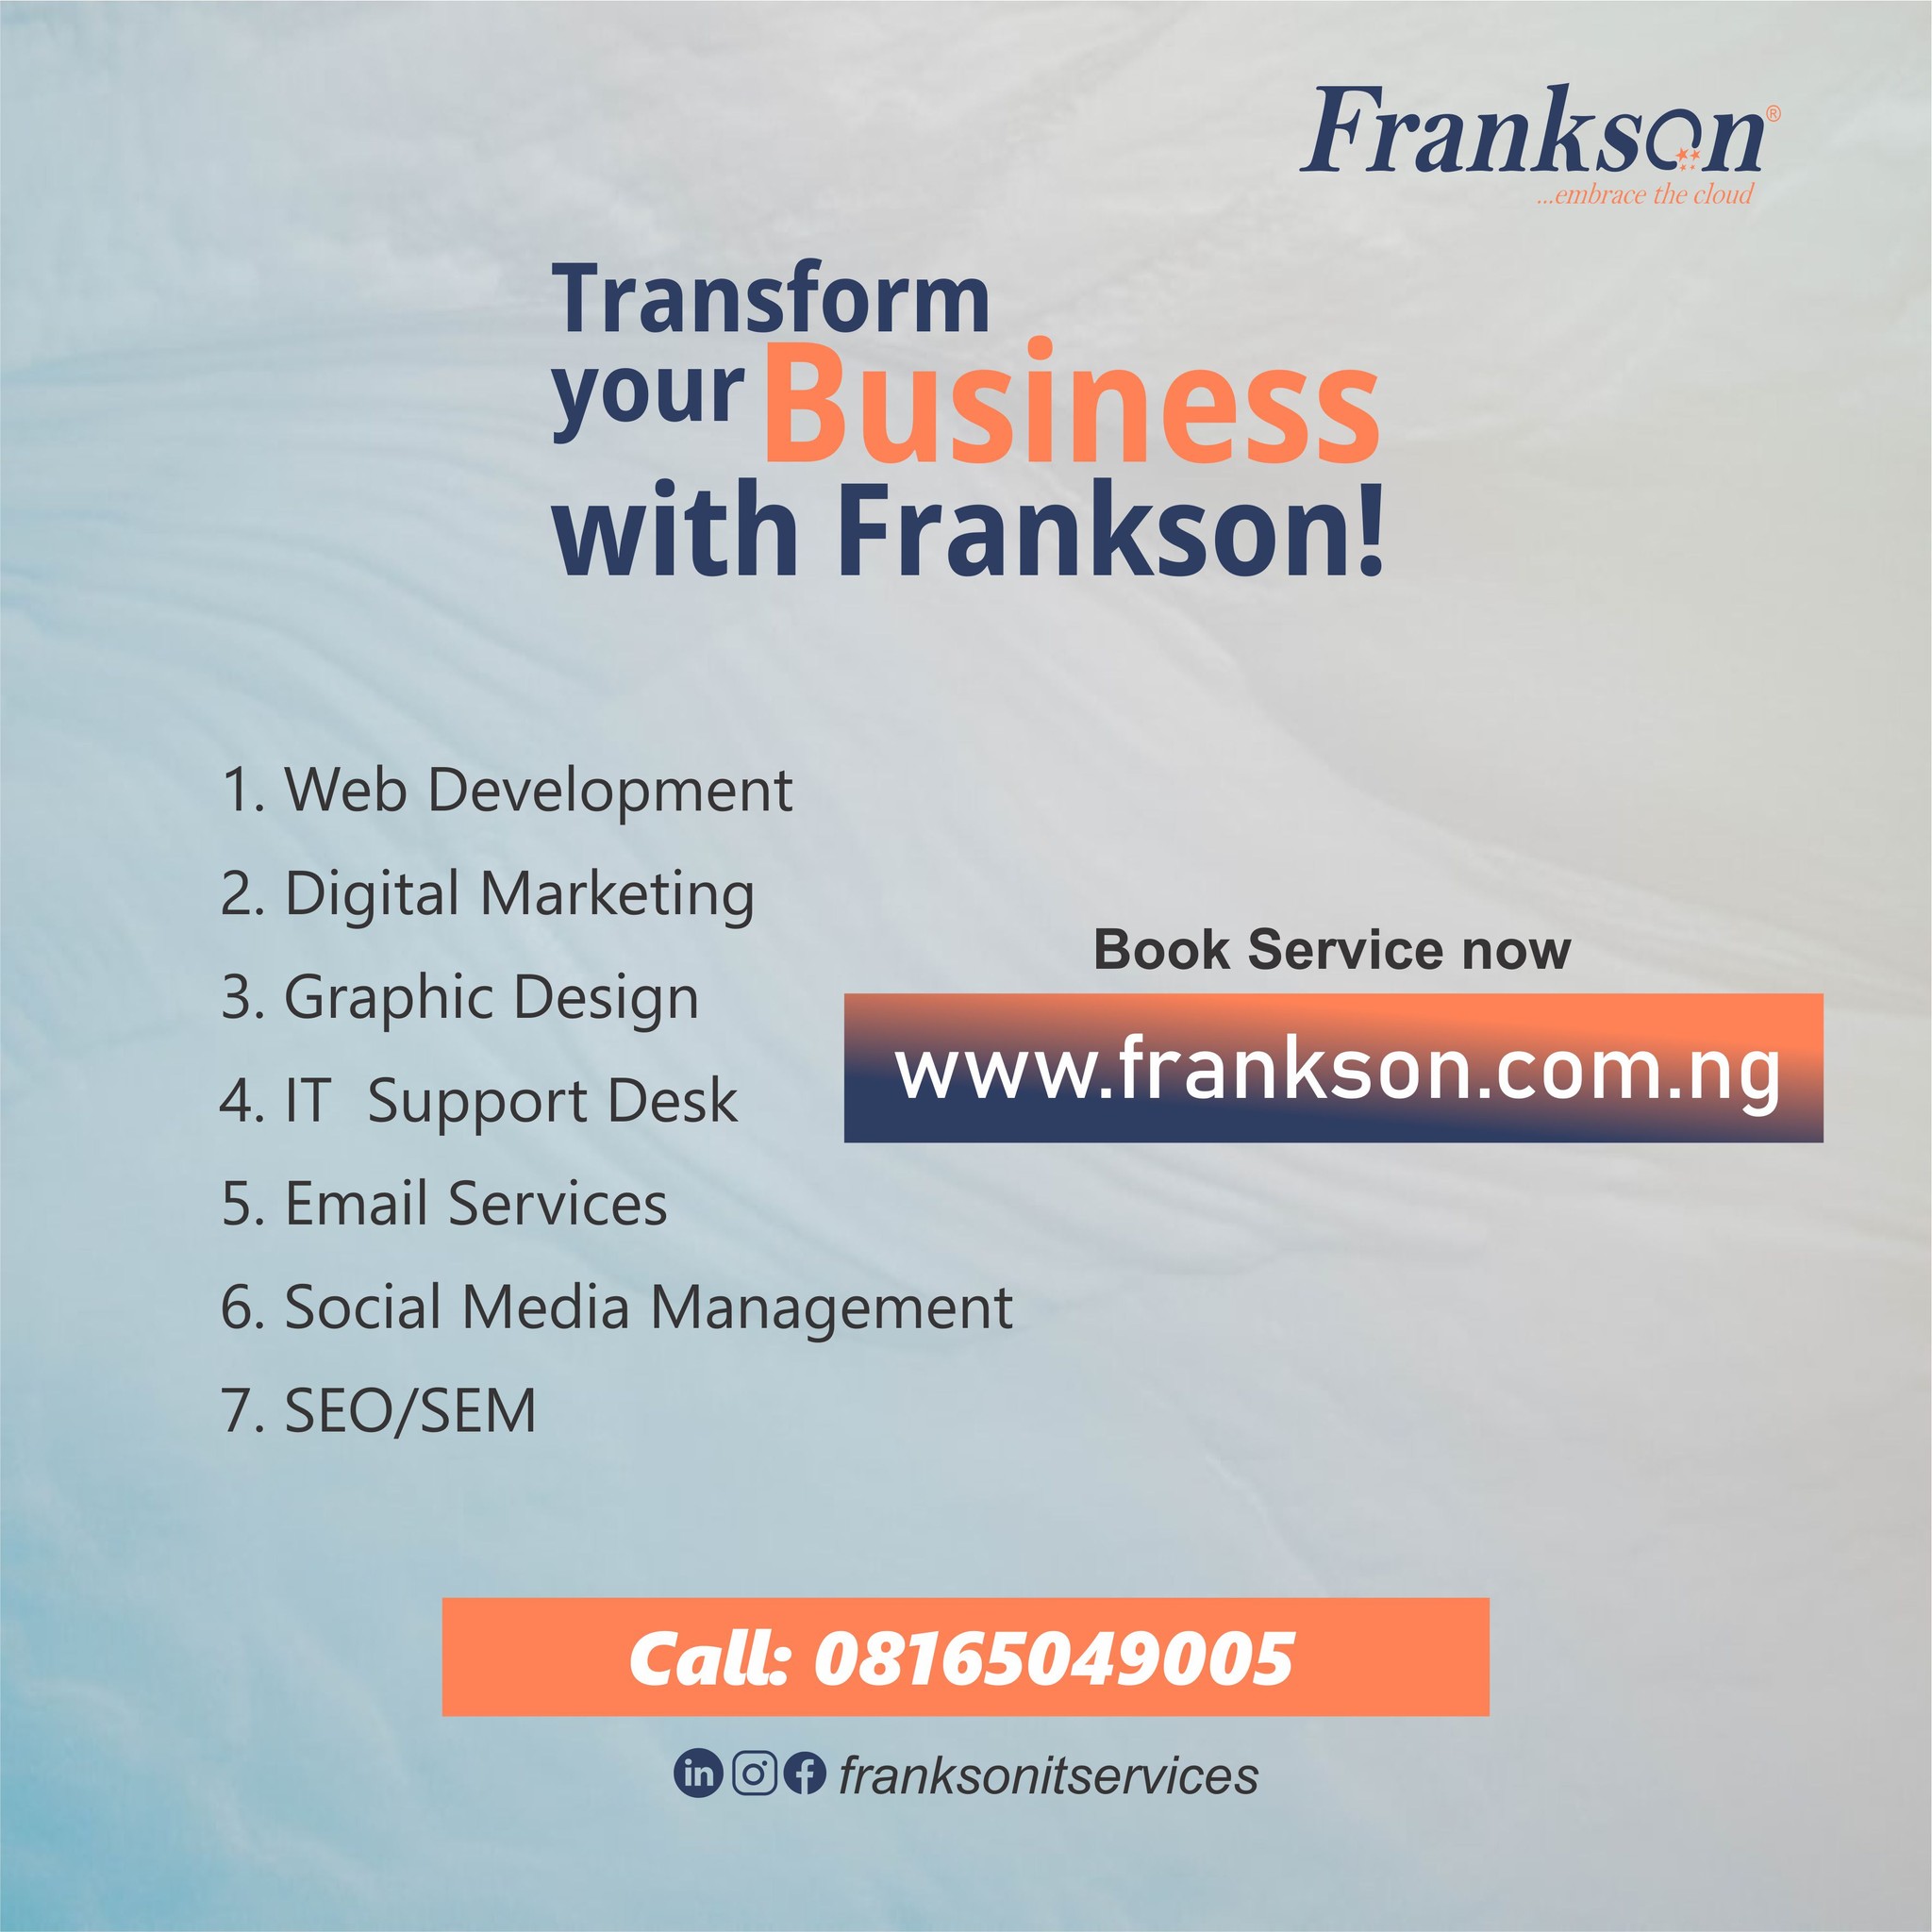 about frankson it services